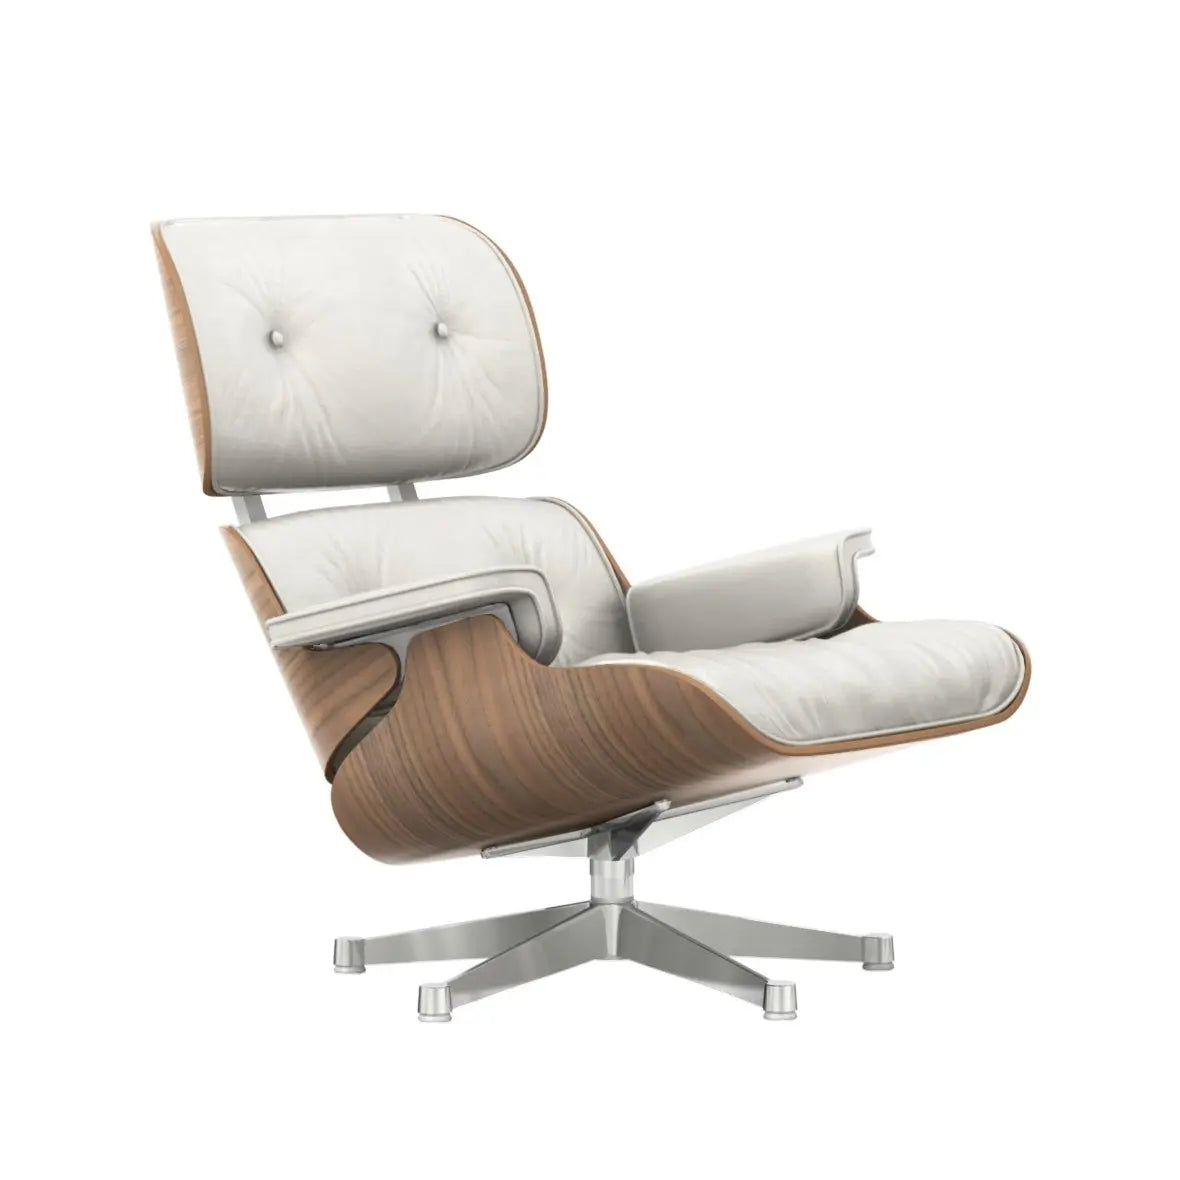 Vitra Eames Lounge Chair valkolakattu pähkinä/valkoinen nahka Vitra